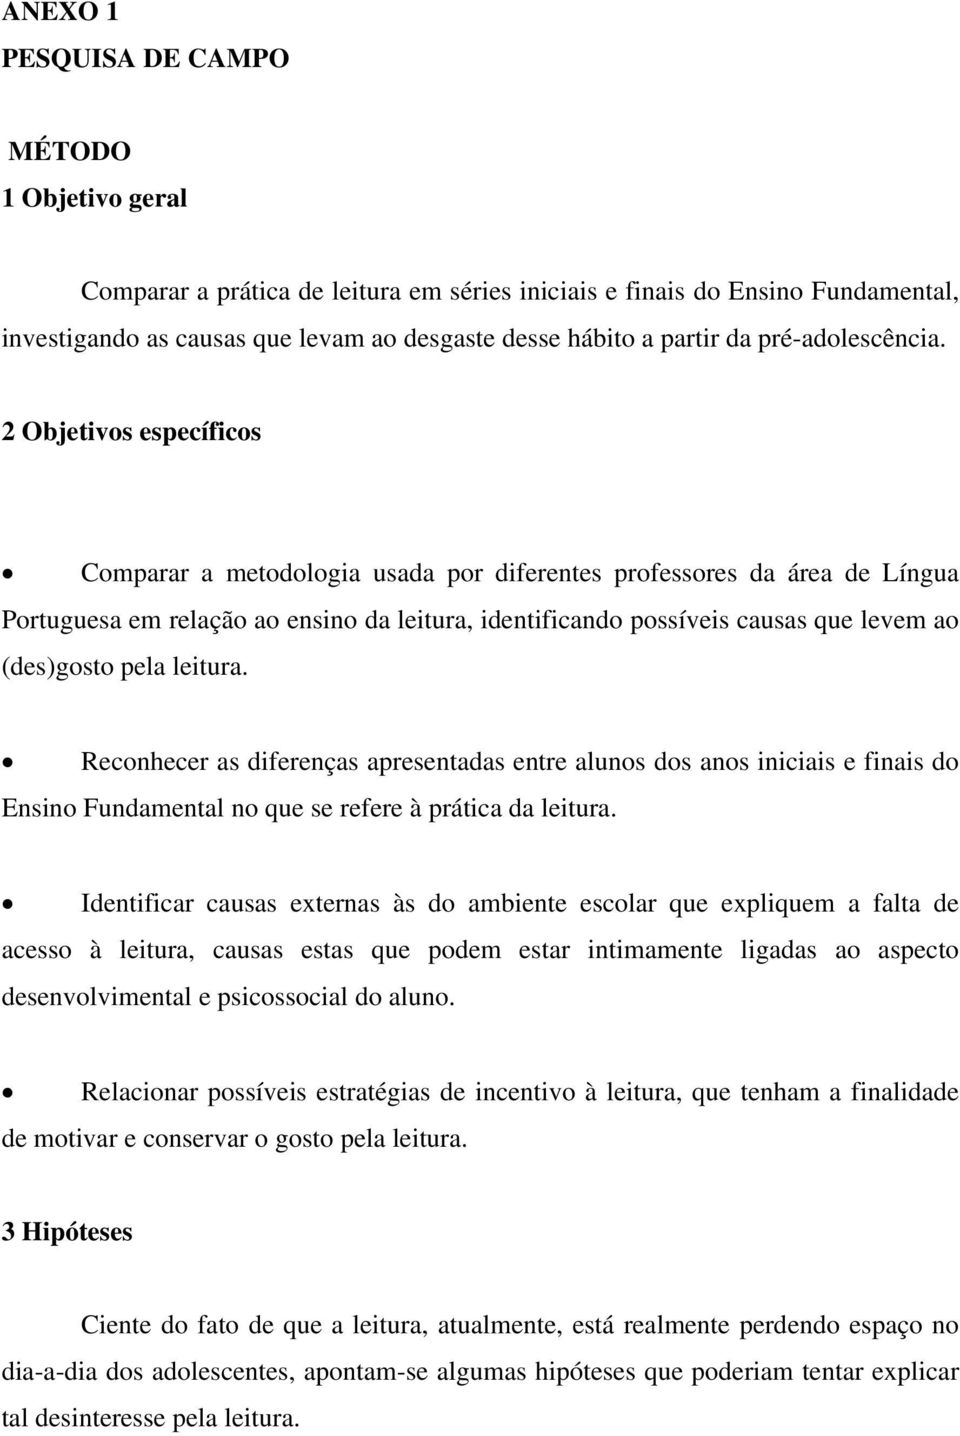 2 Objetivos específicos Comparar a metodologia usada por diferentes professores da área de Língua Portuguesa em relação ao ensino da leitura, identificando possíveis causas que levem ao (des)gosto